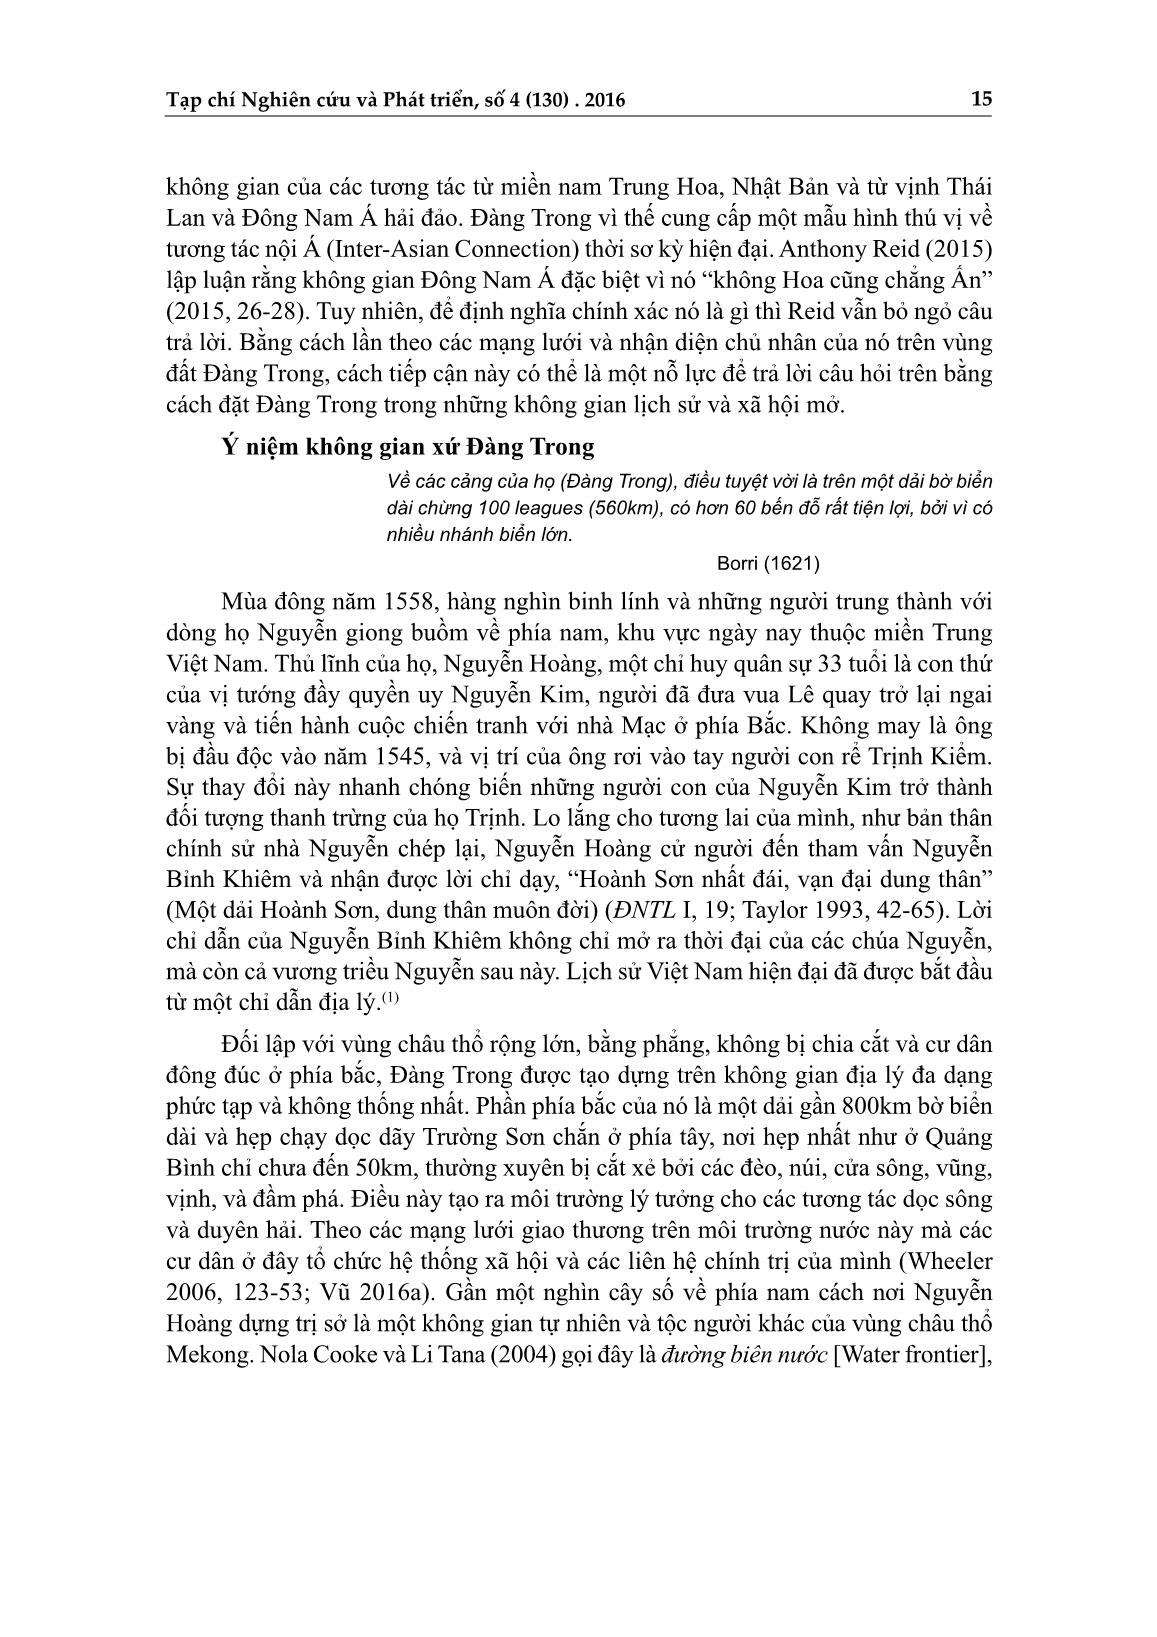 Tái định vị xứ Đàng trong trong không gian Đông Á và Đông Nam Á, thế kỷ XVI-XVIII trang 4